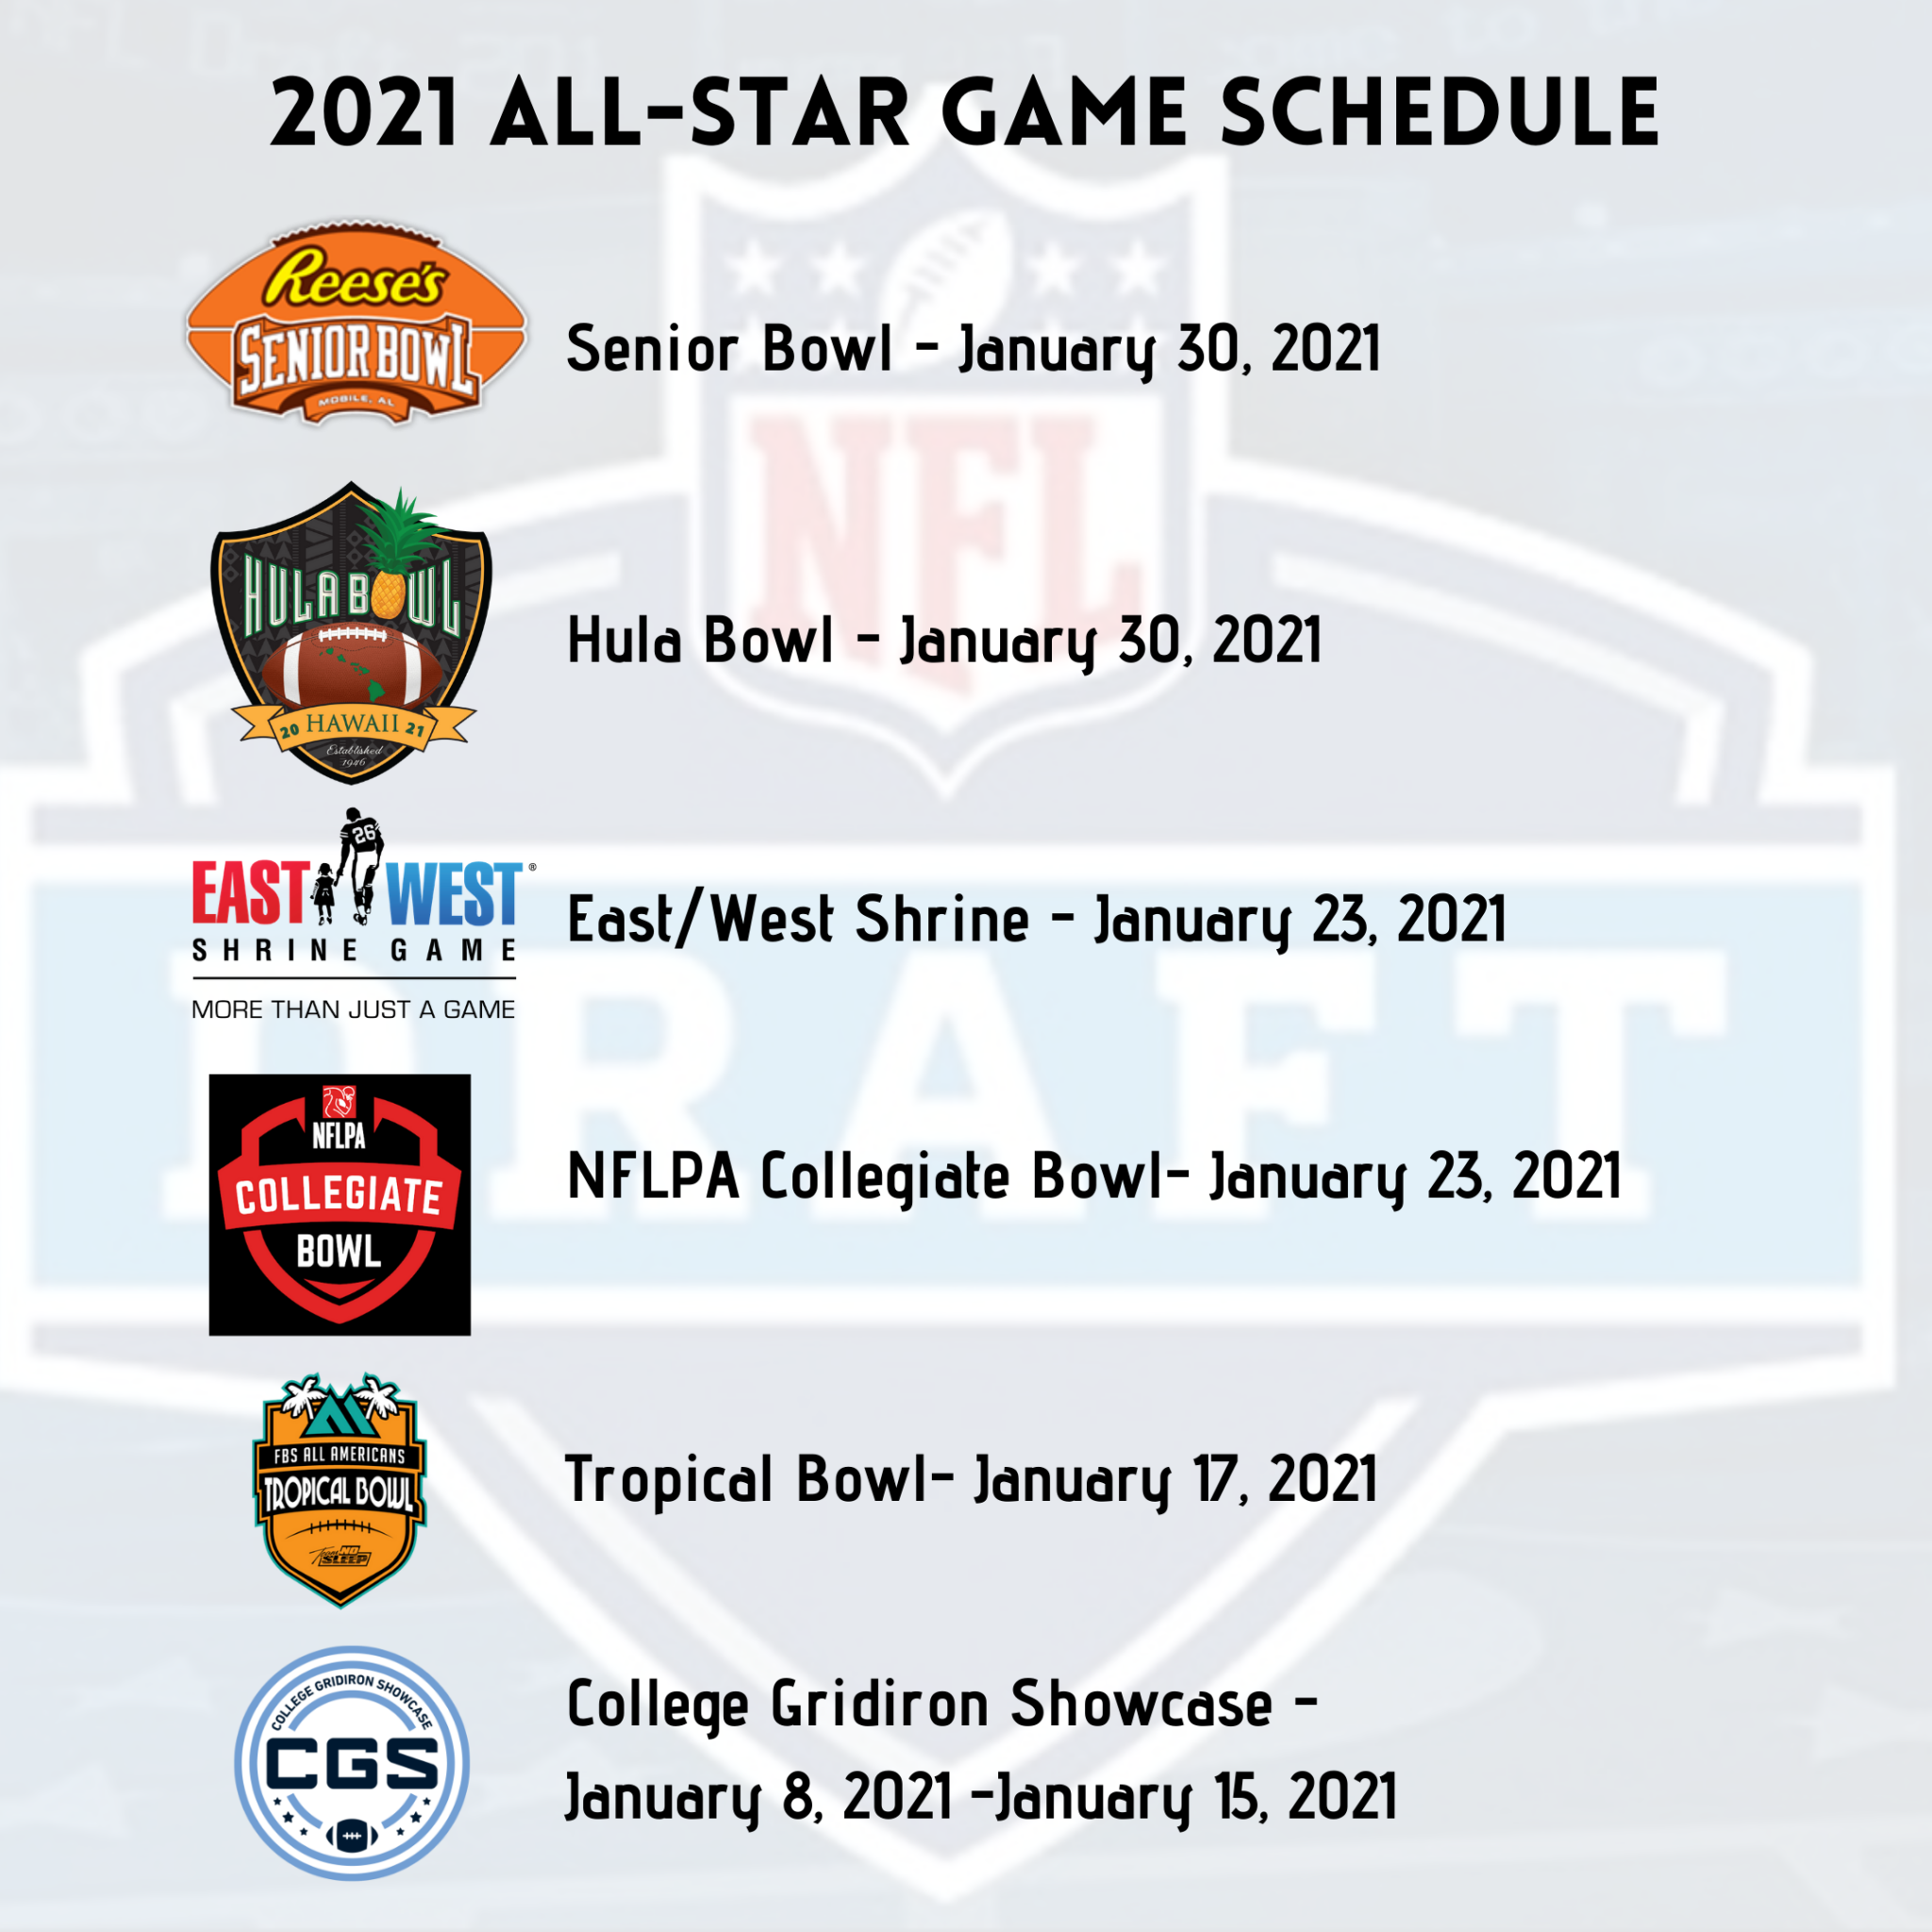 2021 College Football AllStar Game Schedule